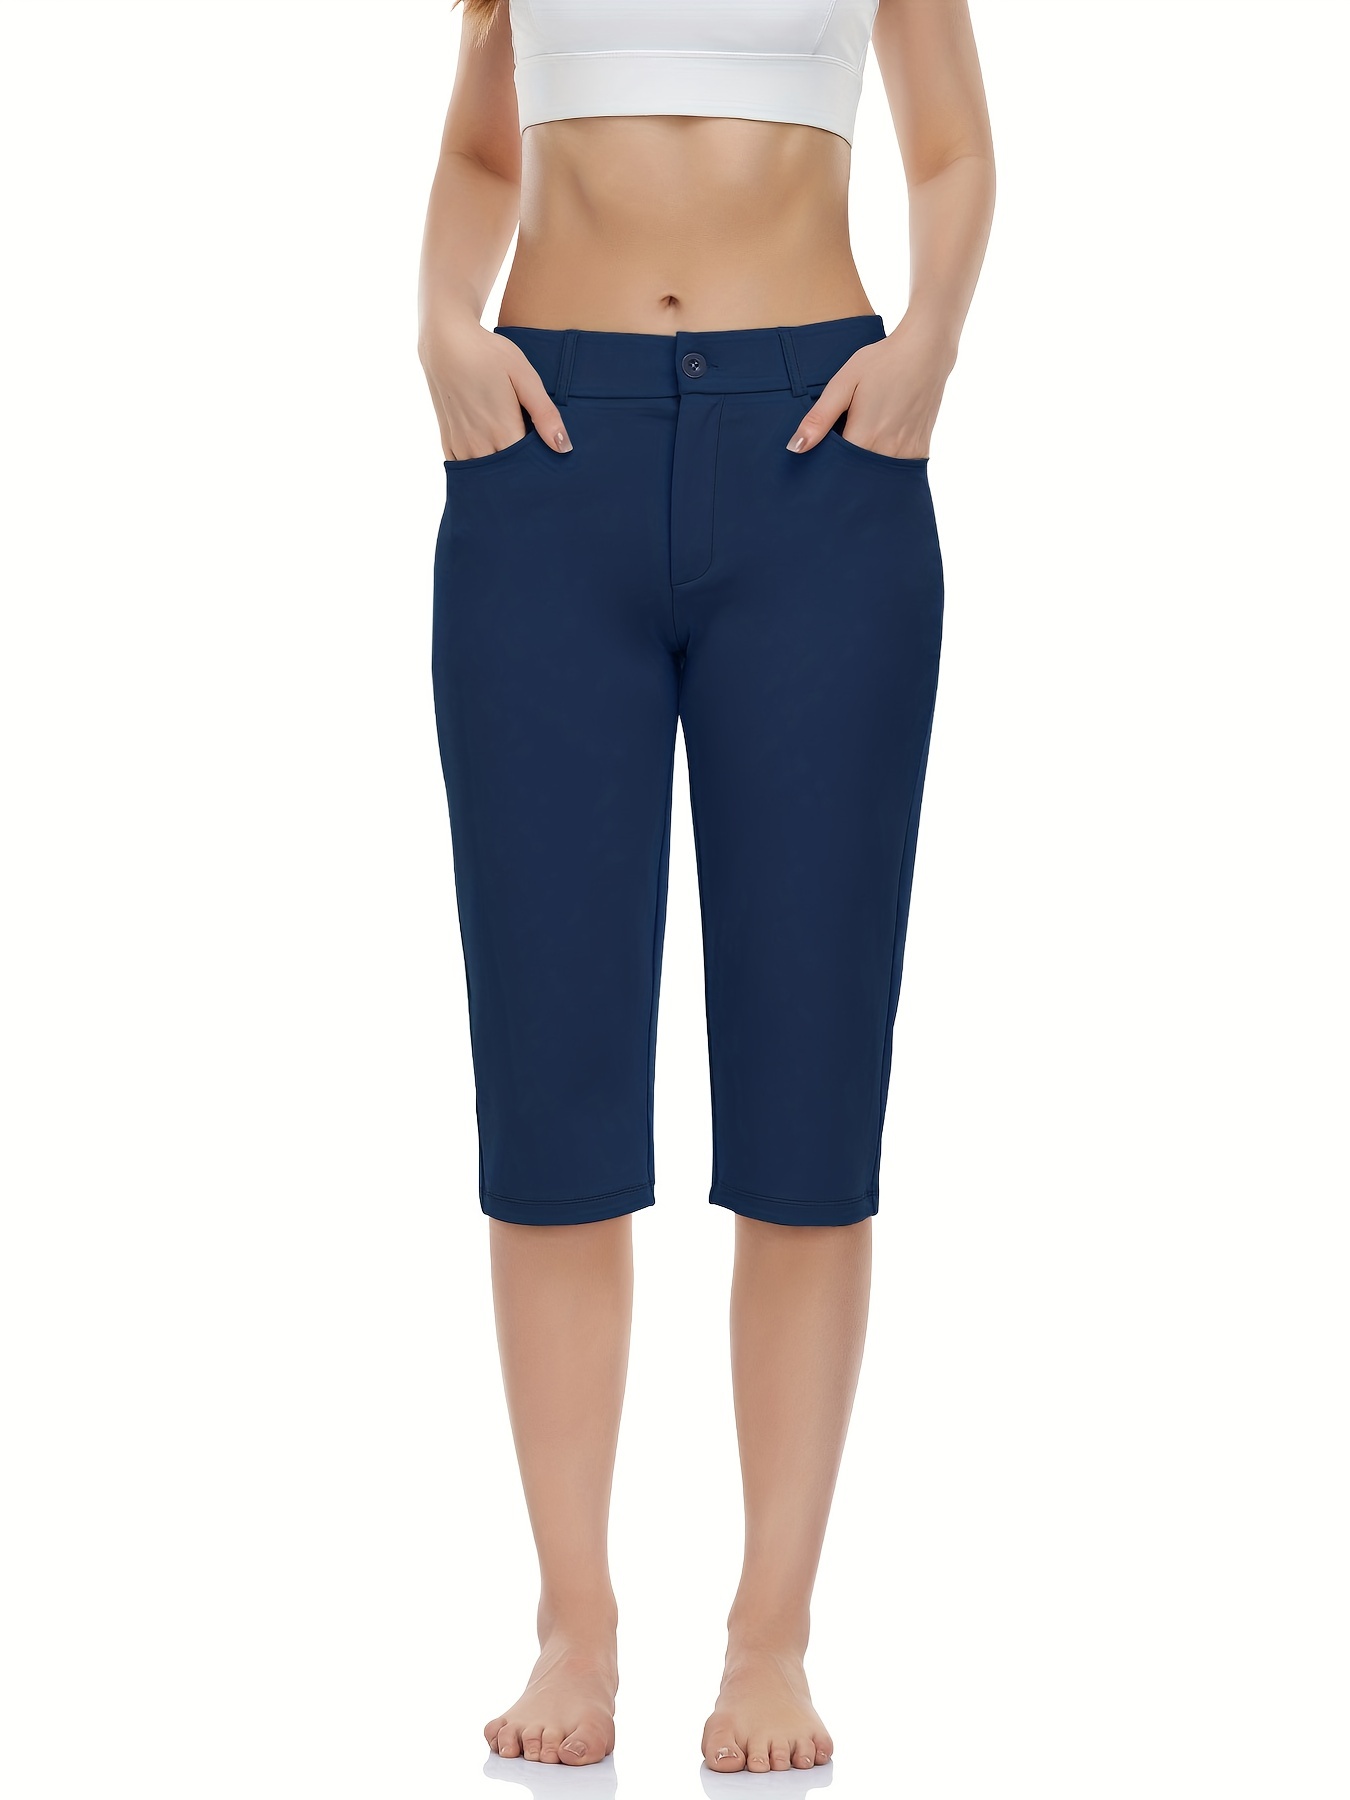 TARSE - Pantalones capri de yoga para mujer, holgados, suaves, con cordón,  pantalones deportivos casuales con bolsillos